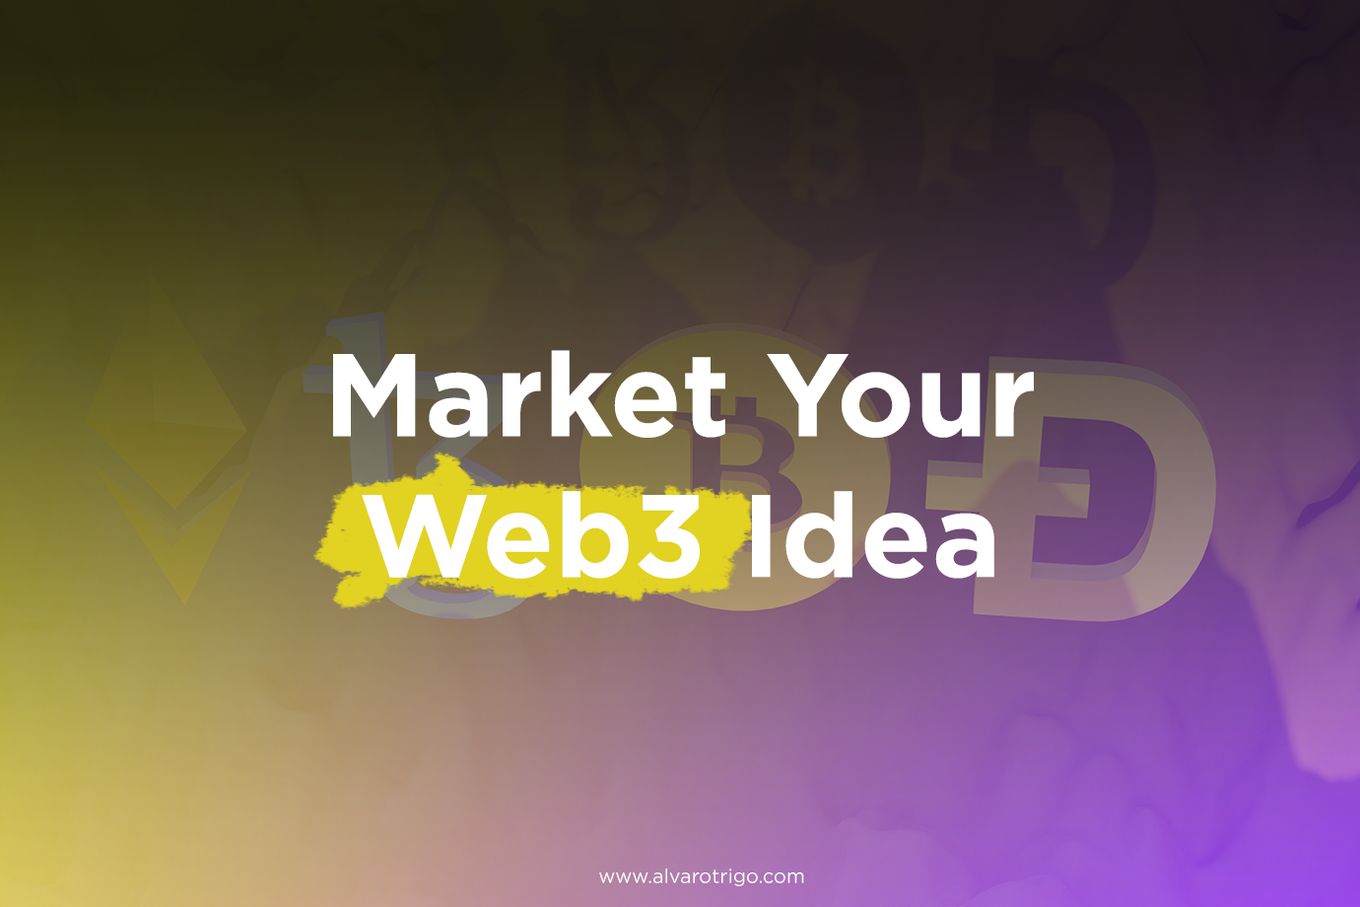 Market Your Web3 Idea